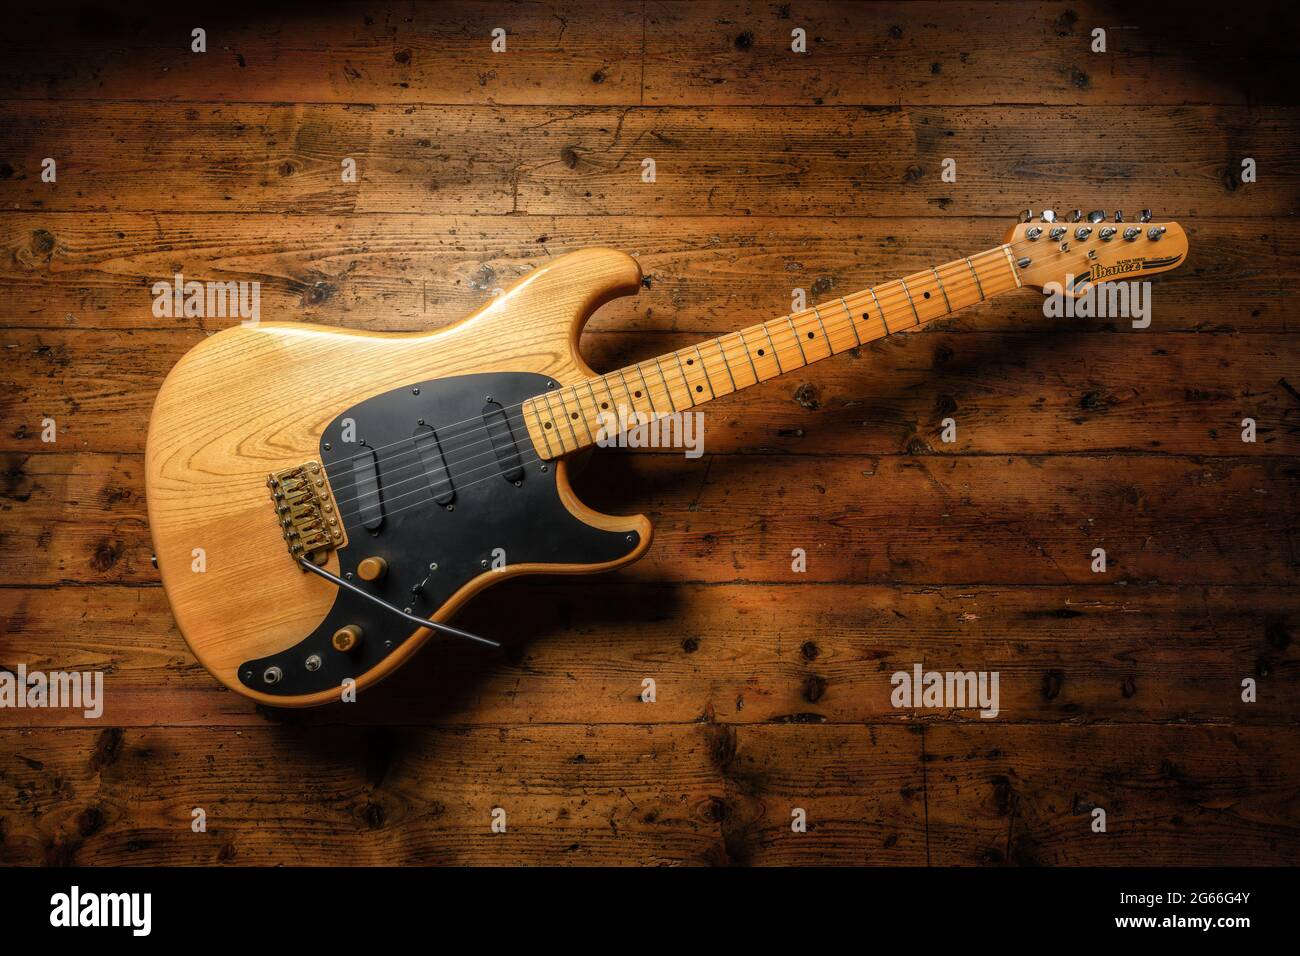 Ibanez Blazer Electric Guitar Stock Photo - Alamy